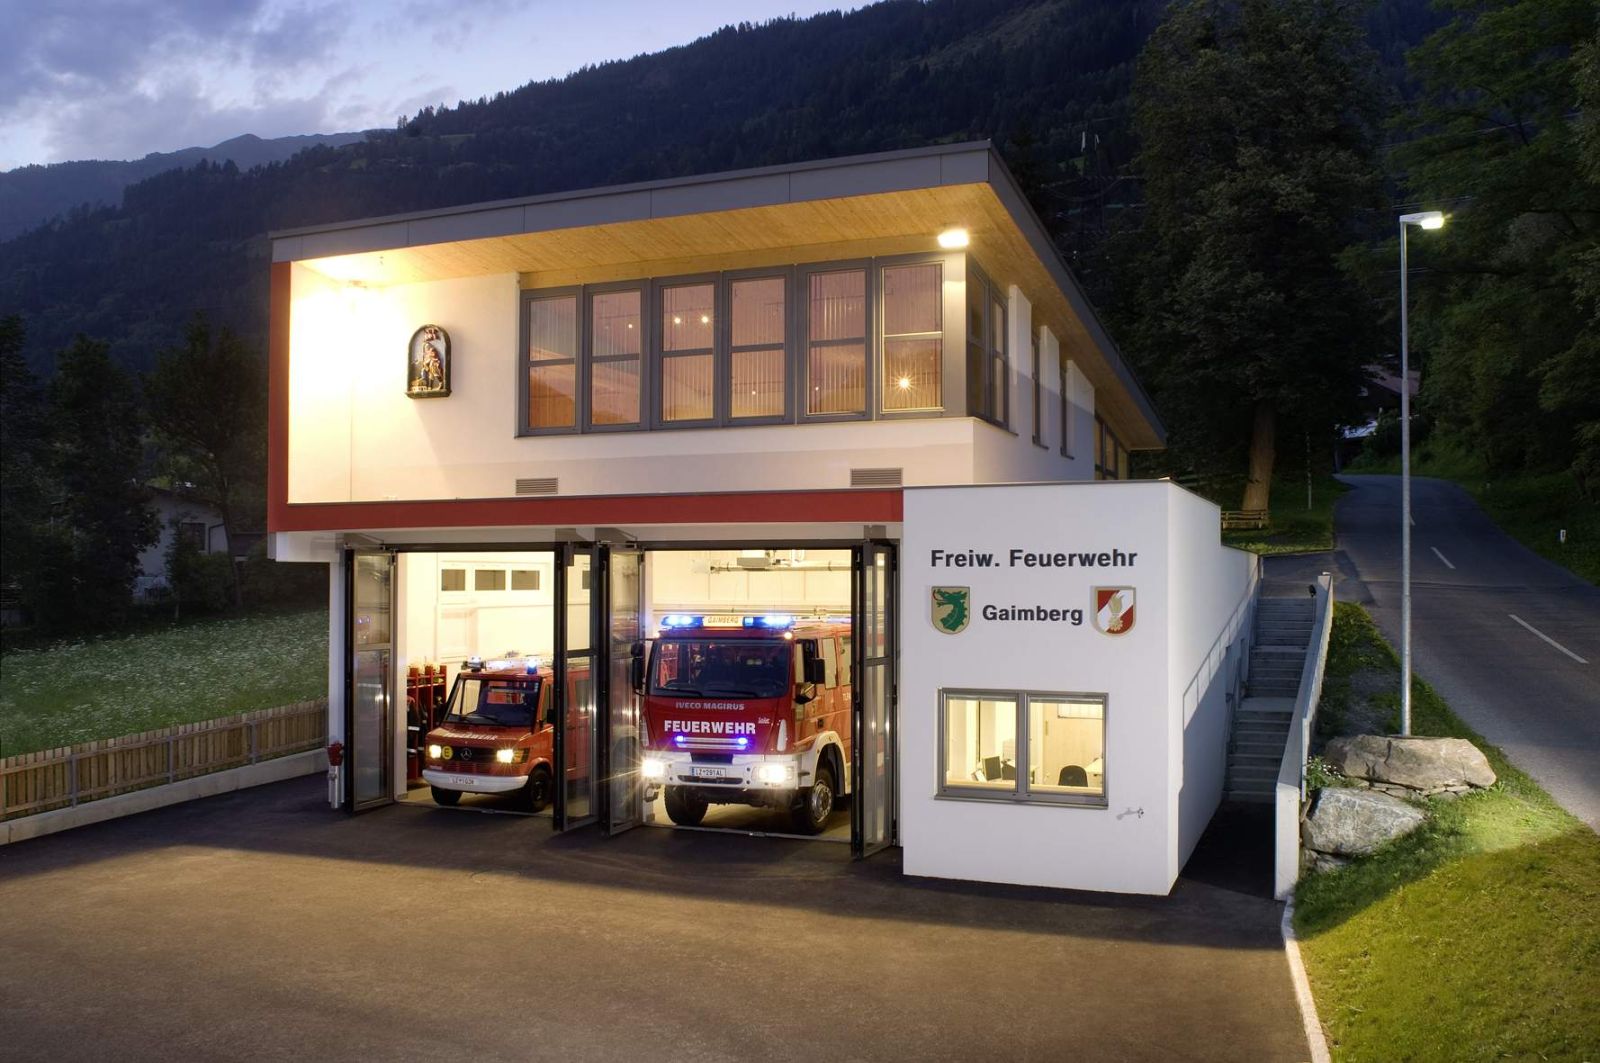 Feuerwehrhaus in Gaimberg mit 2 Fahrzeugen in der Garage